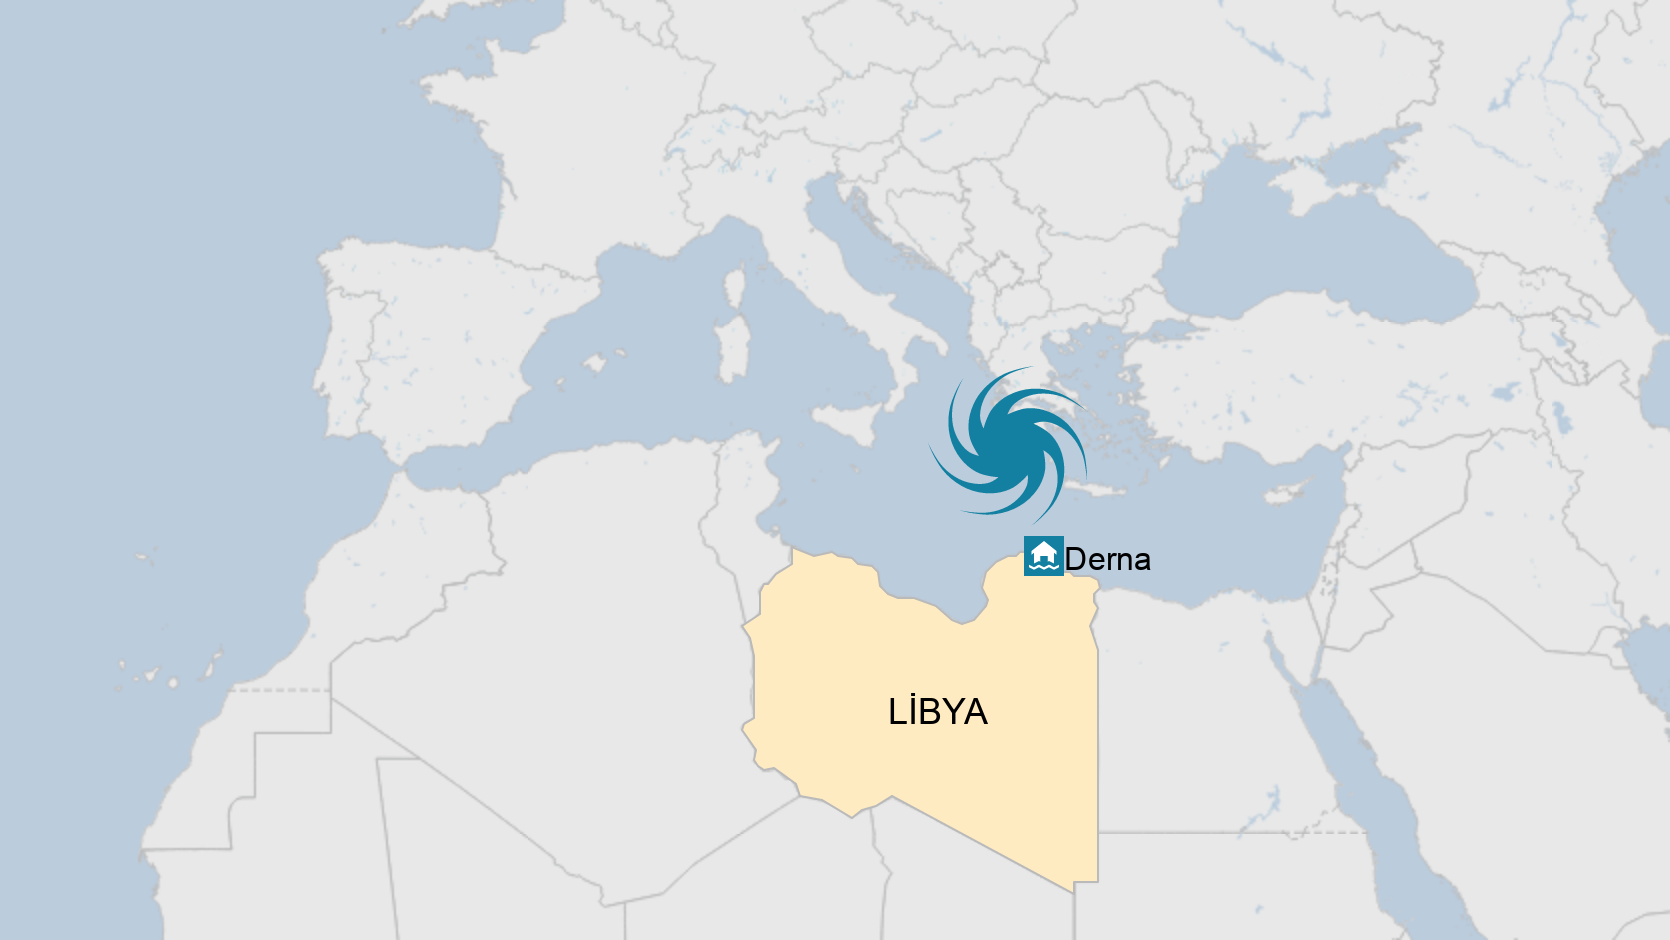 5 Eylül'de Türkiye ve Yunanistan vuran kasırga, 4 gün sonra Libya'ya ulaşmış görünüyor